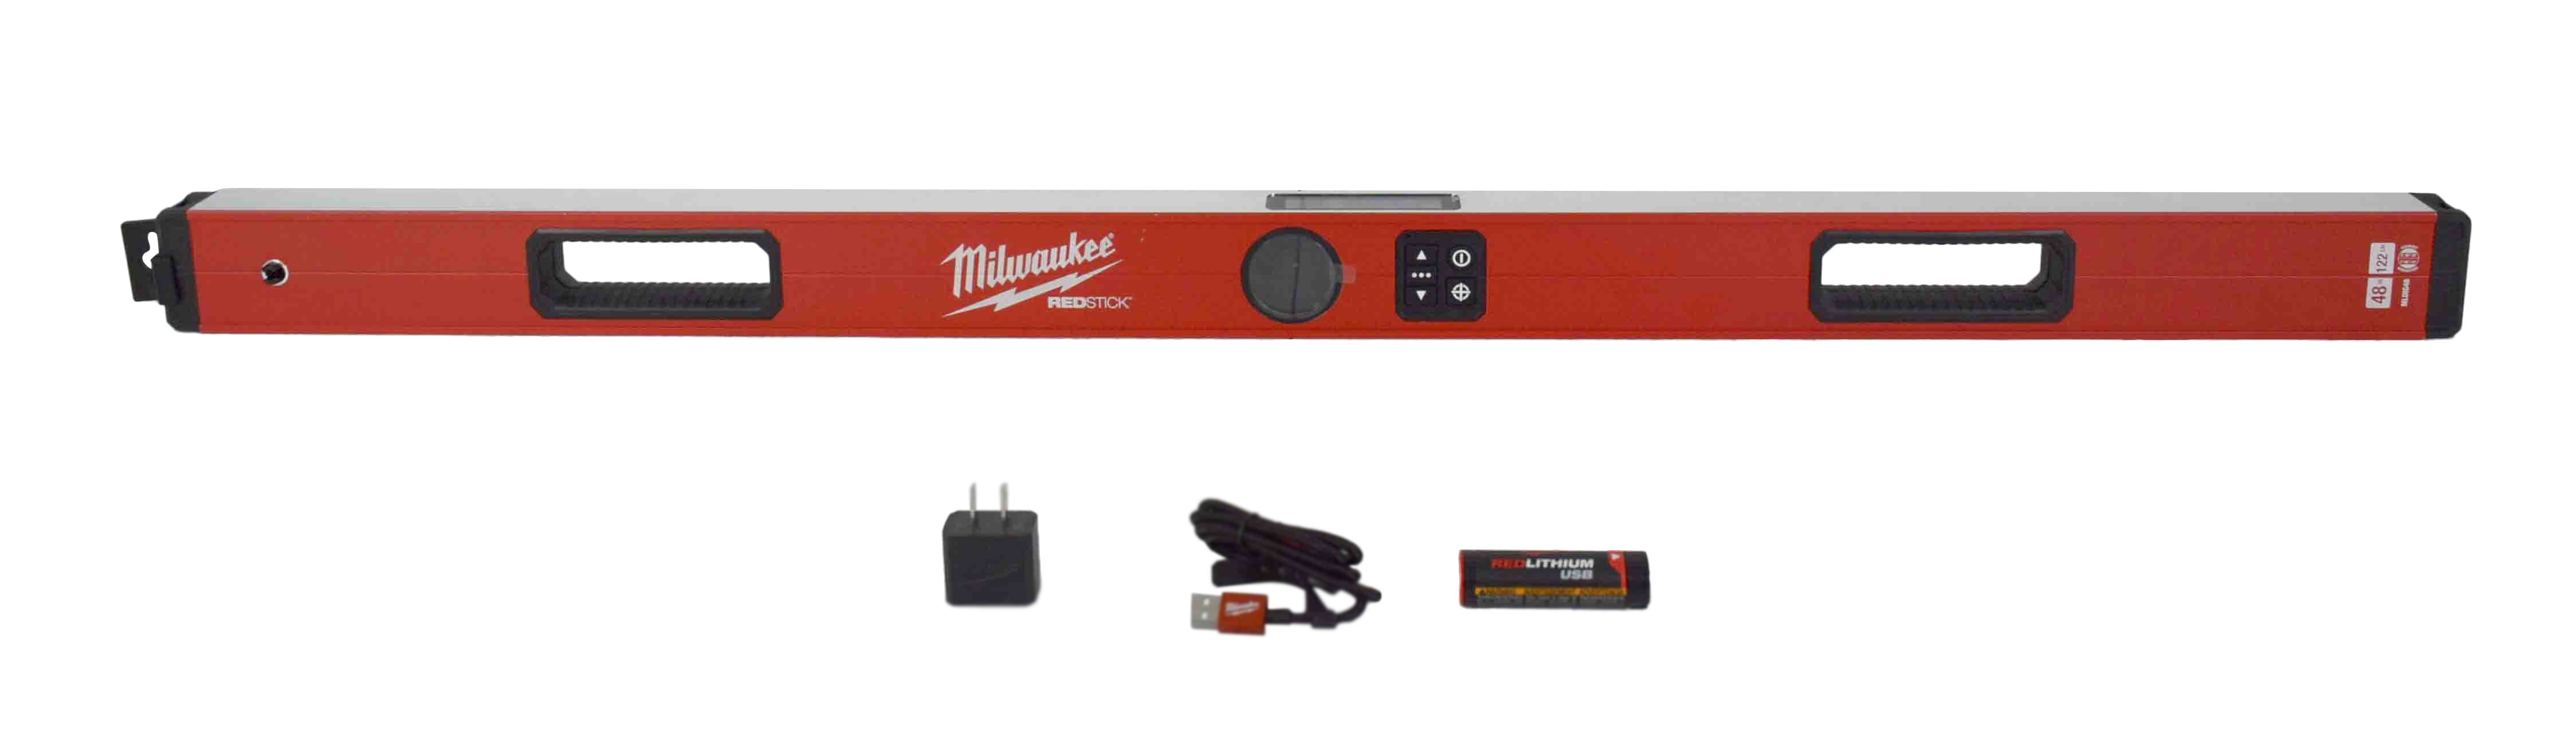 Milwaukee Redstick Level Review - Pro Tool Reviews